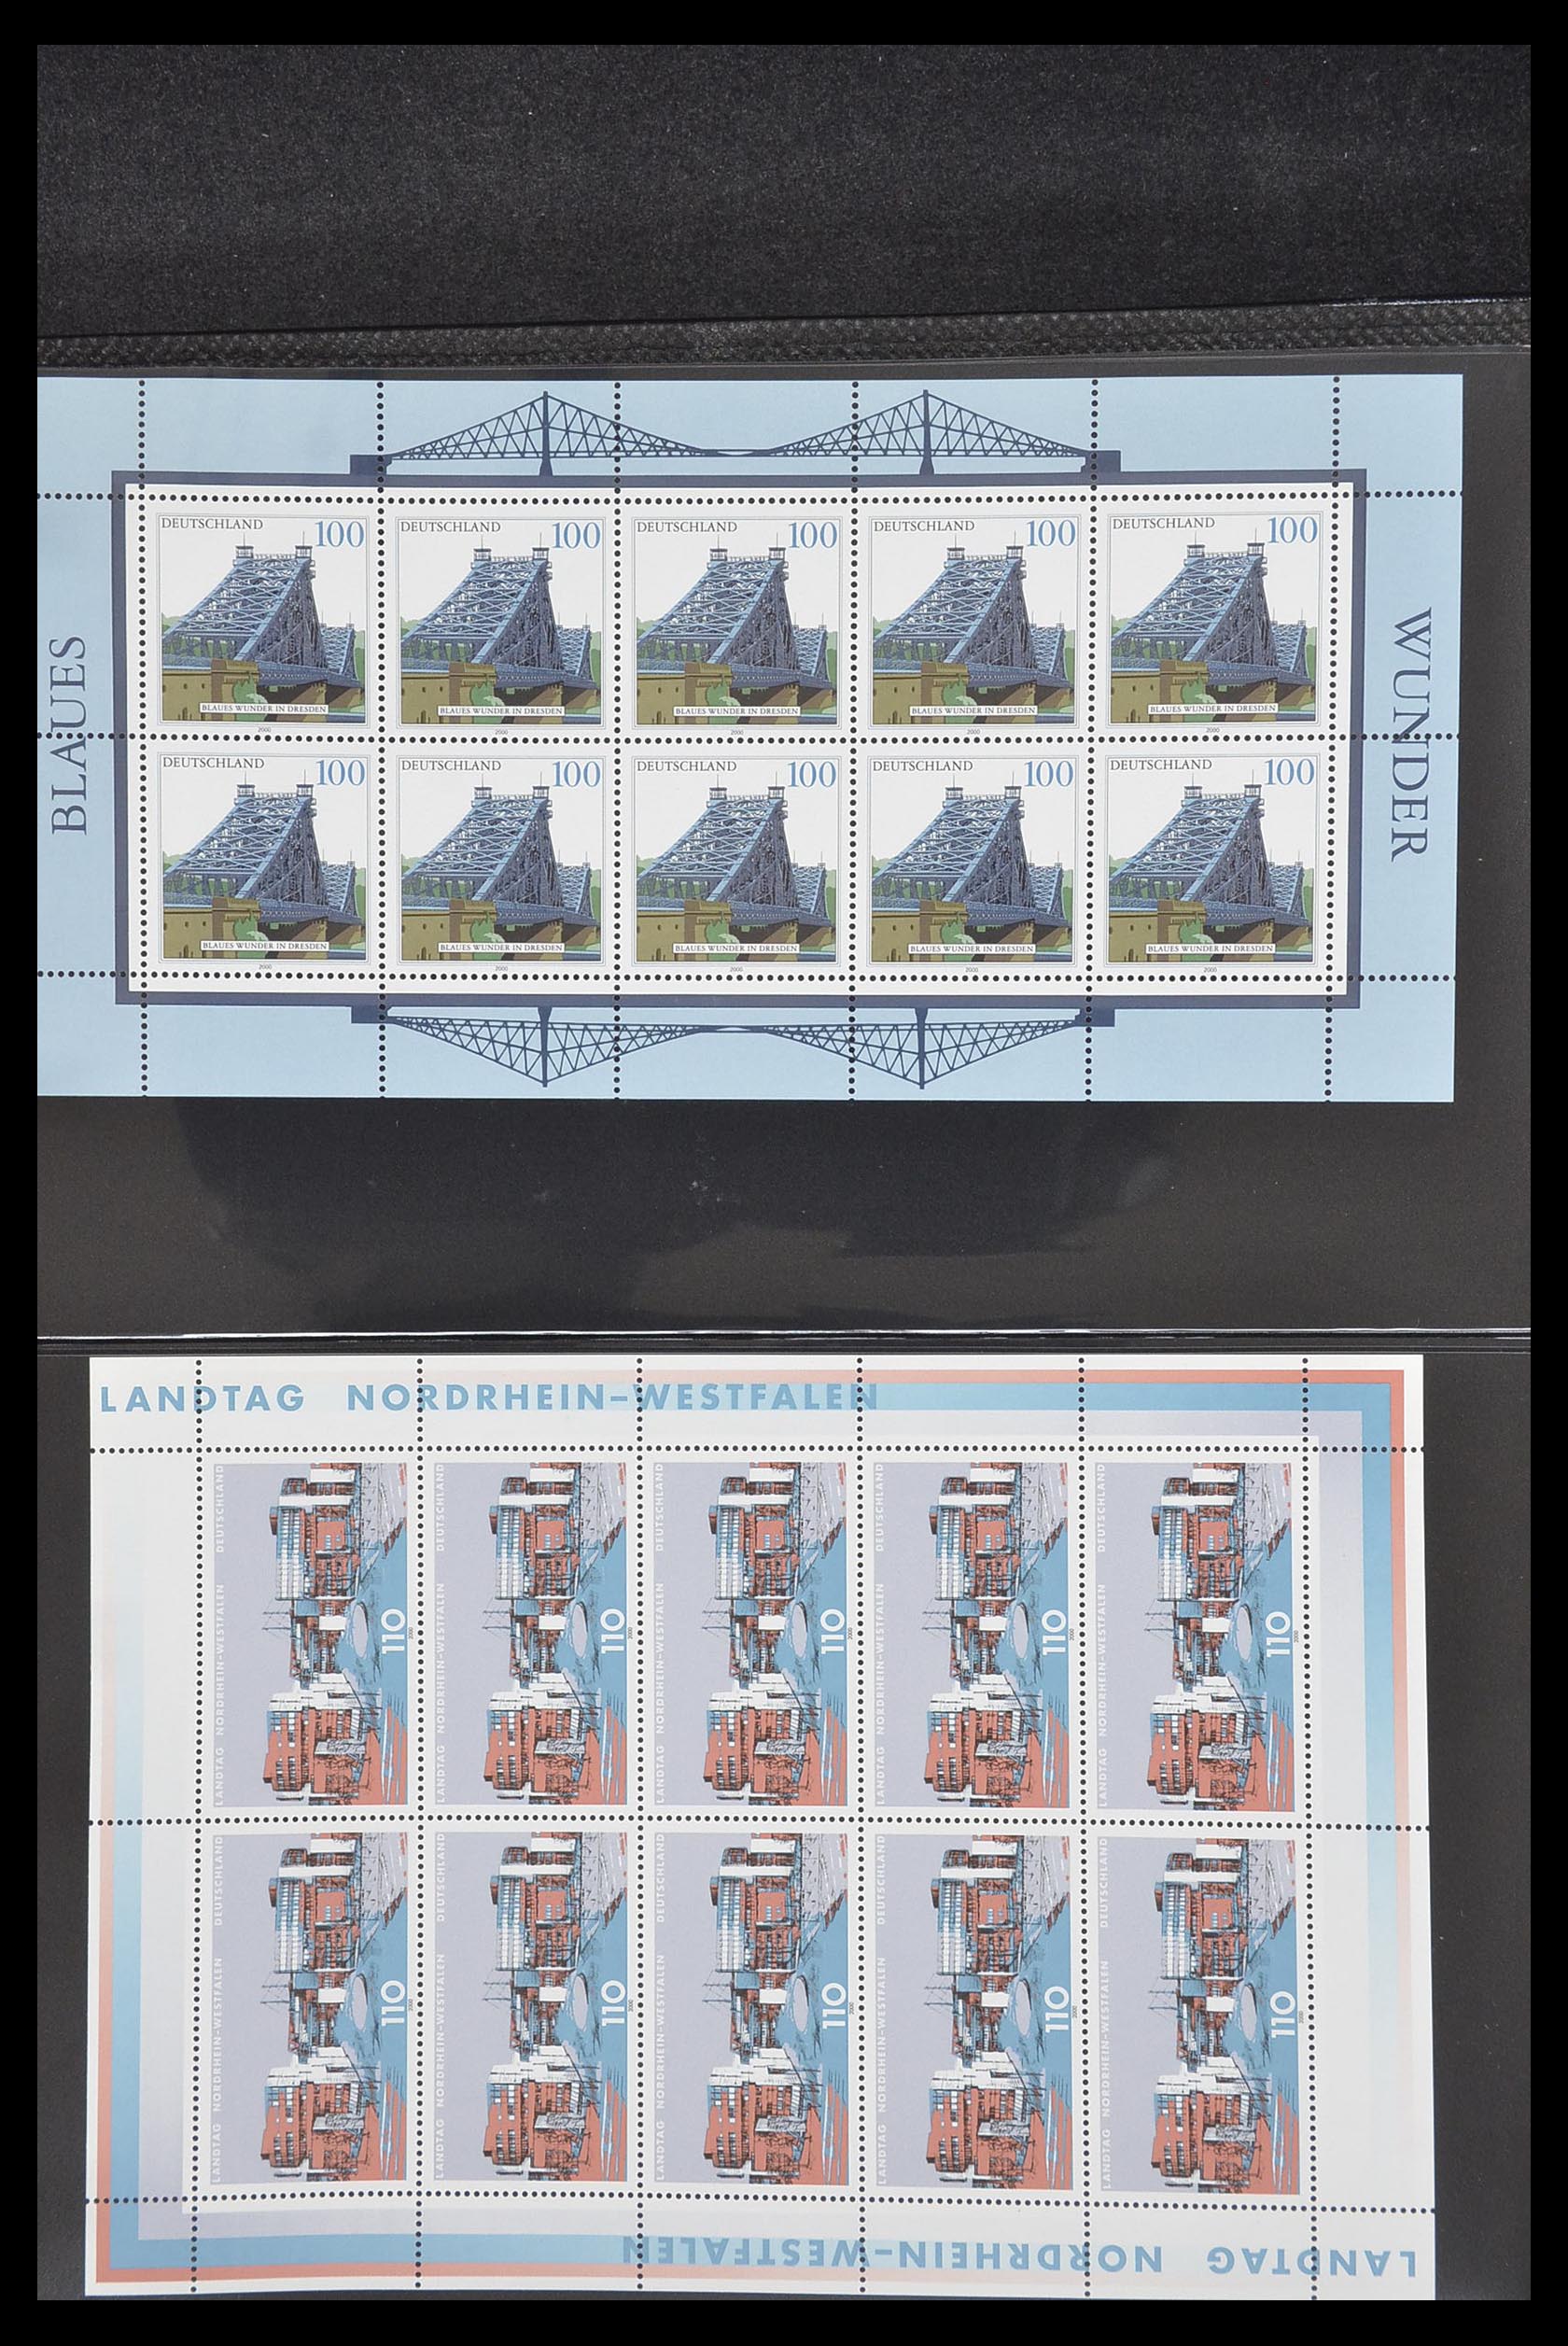 33936 156 - Stamp collection 33936 Bundespost kleinbogen 1994-2000.